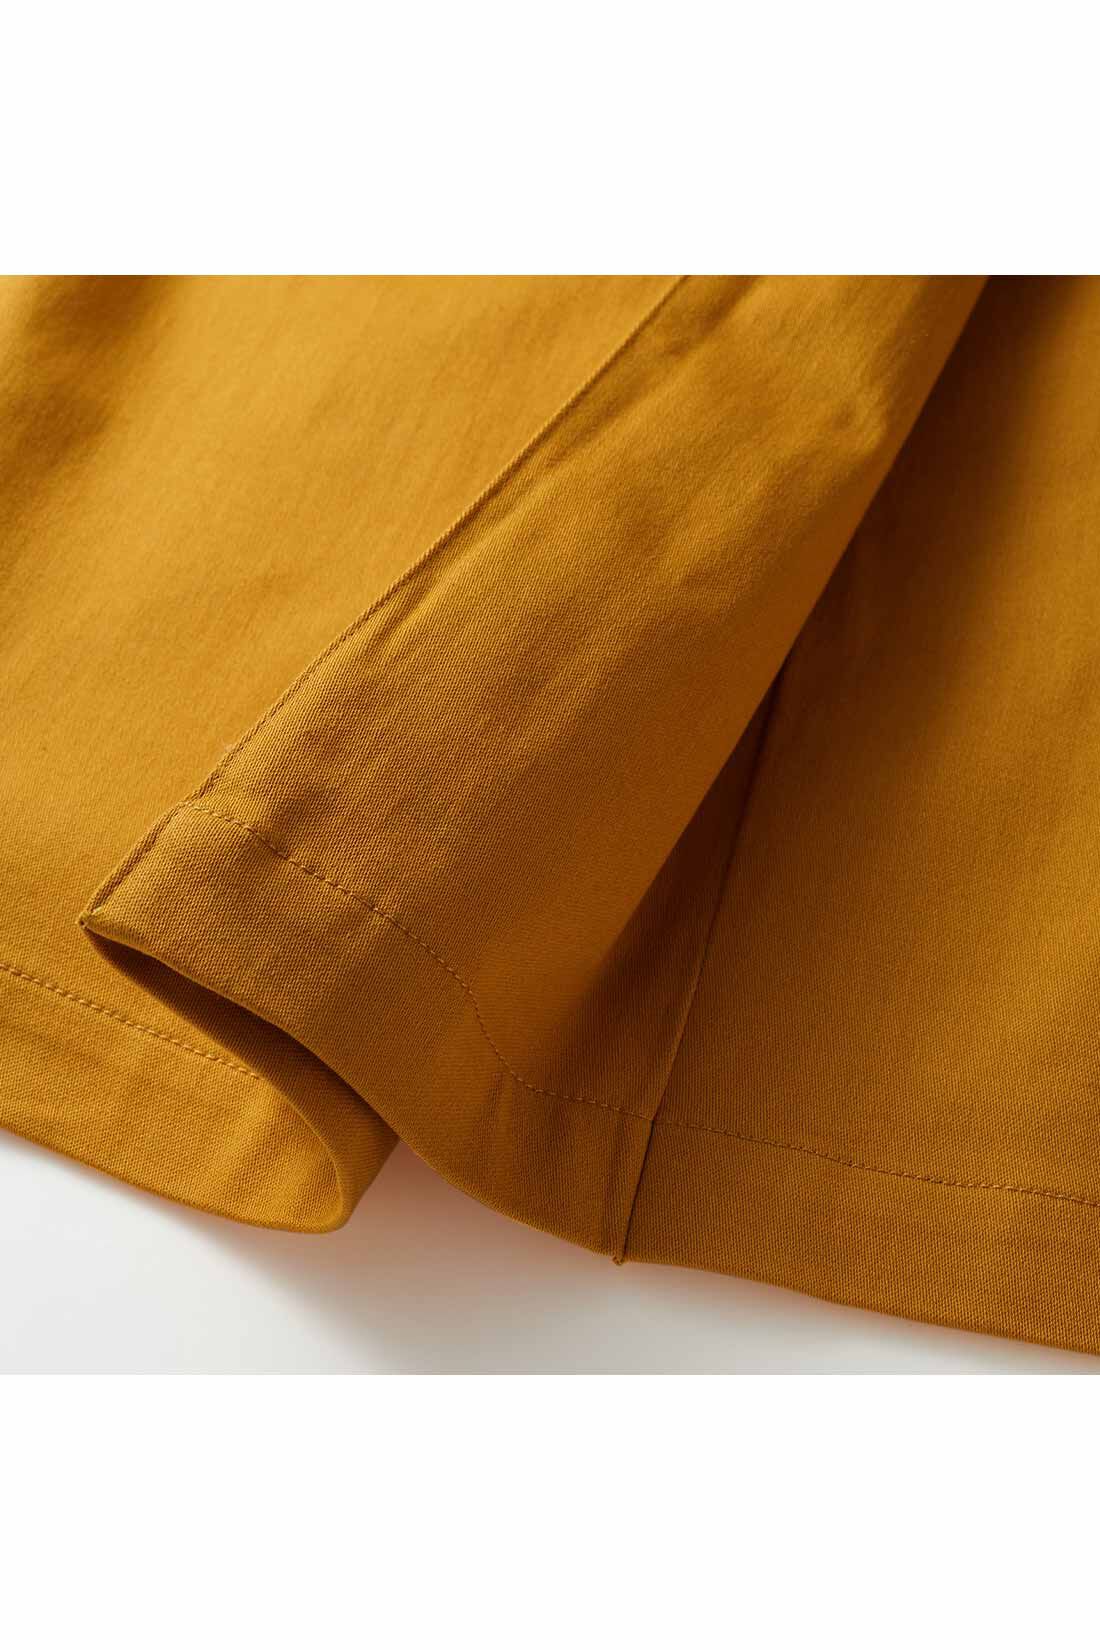 IEDIT|IEDIT[イディット]　ラップ風ストレッチロングスカート〈マスタードイエロー〉|ラップスカートに見えて、実はつながっている折り返しデザイン。